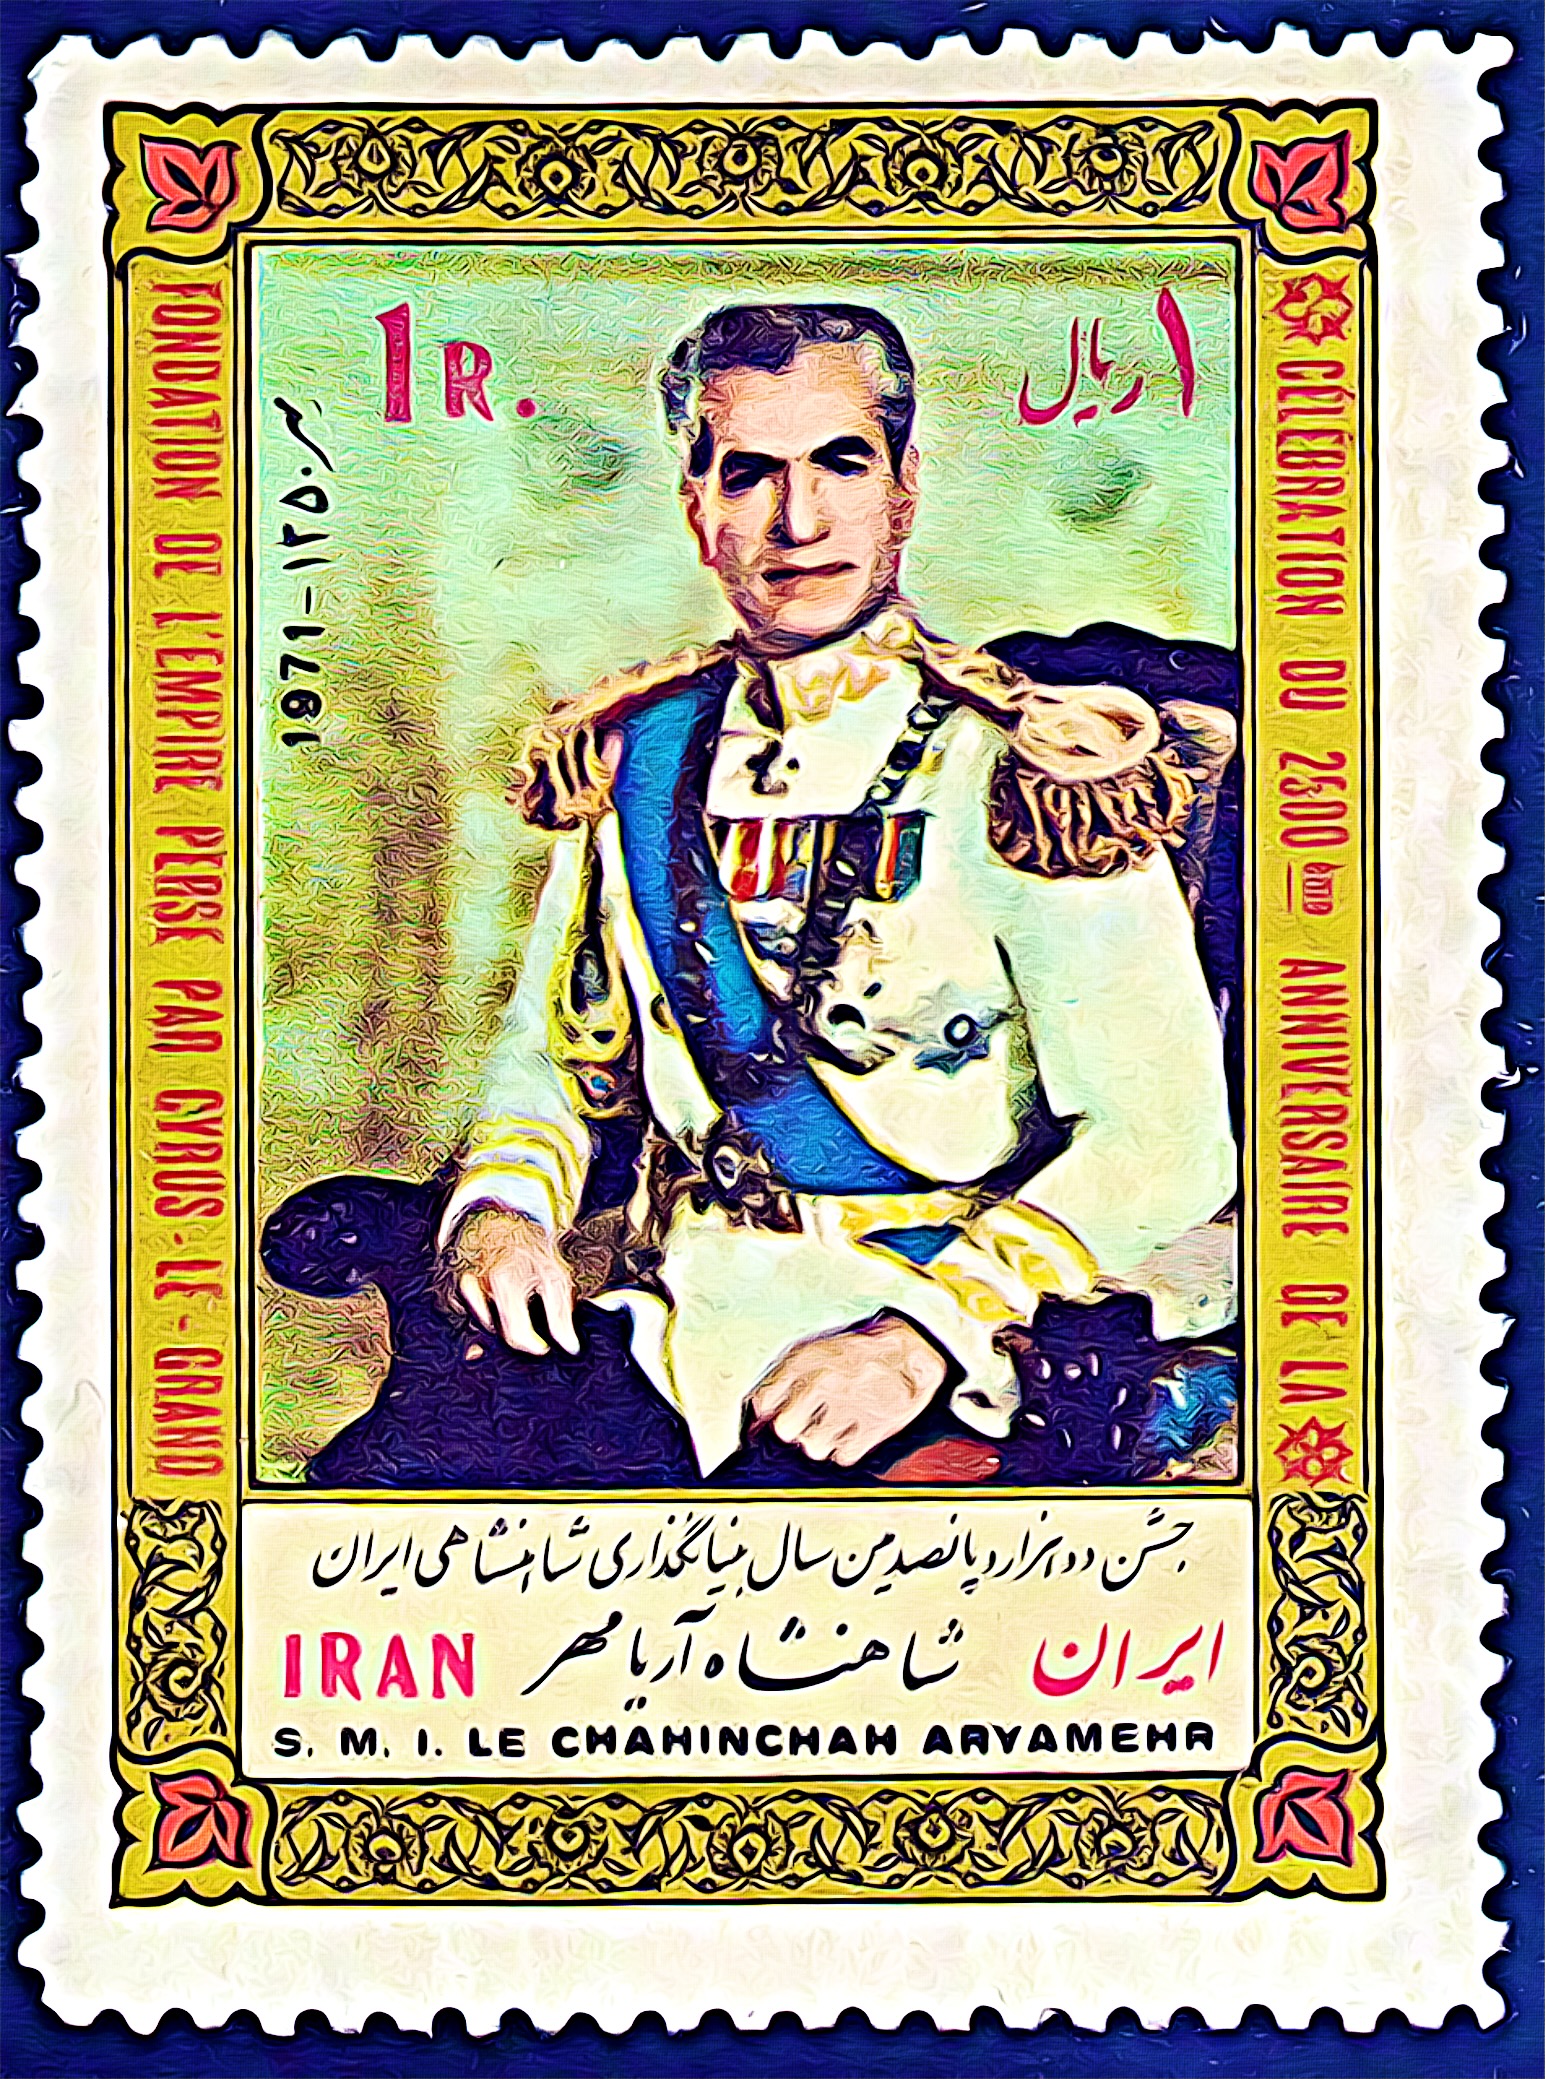 The 2500th Anniversary of the Persian Empire - Iran 1971 